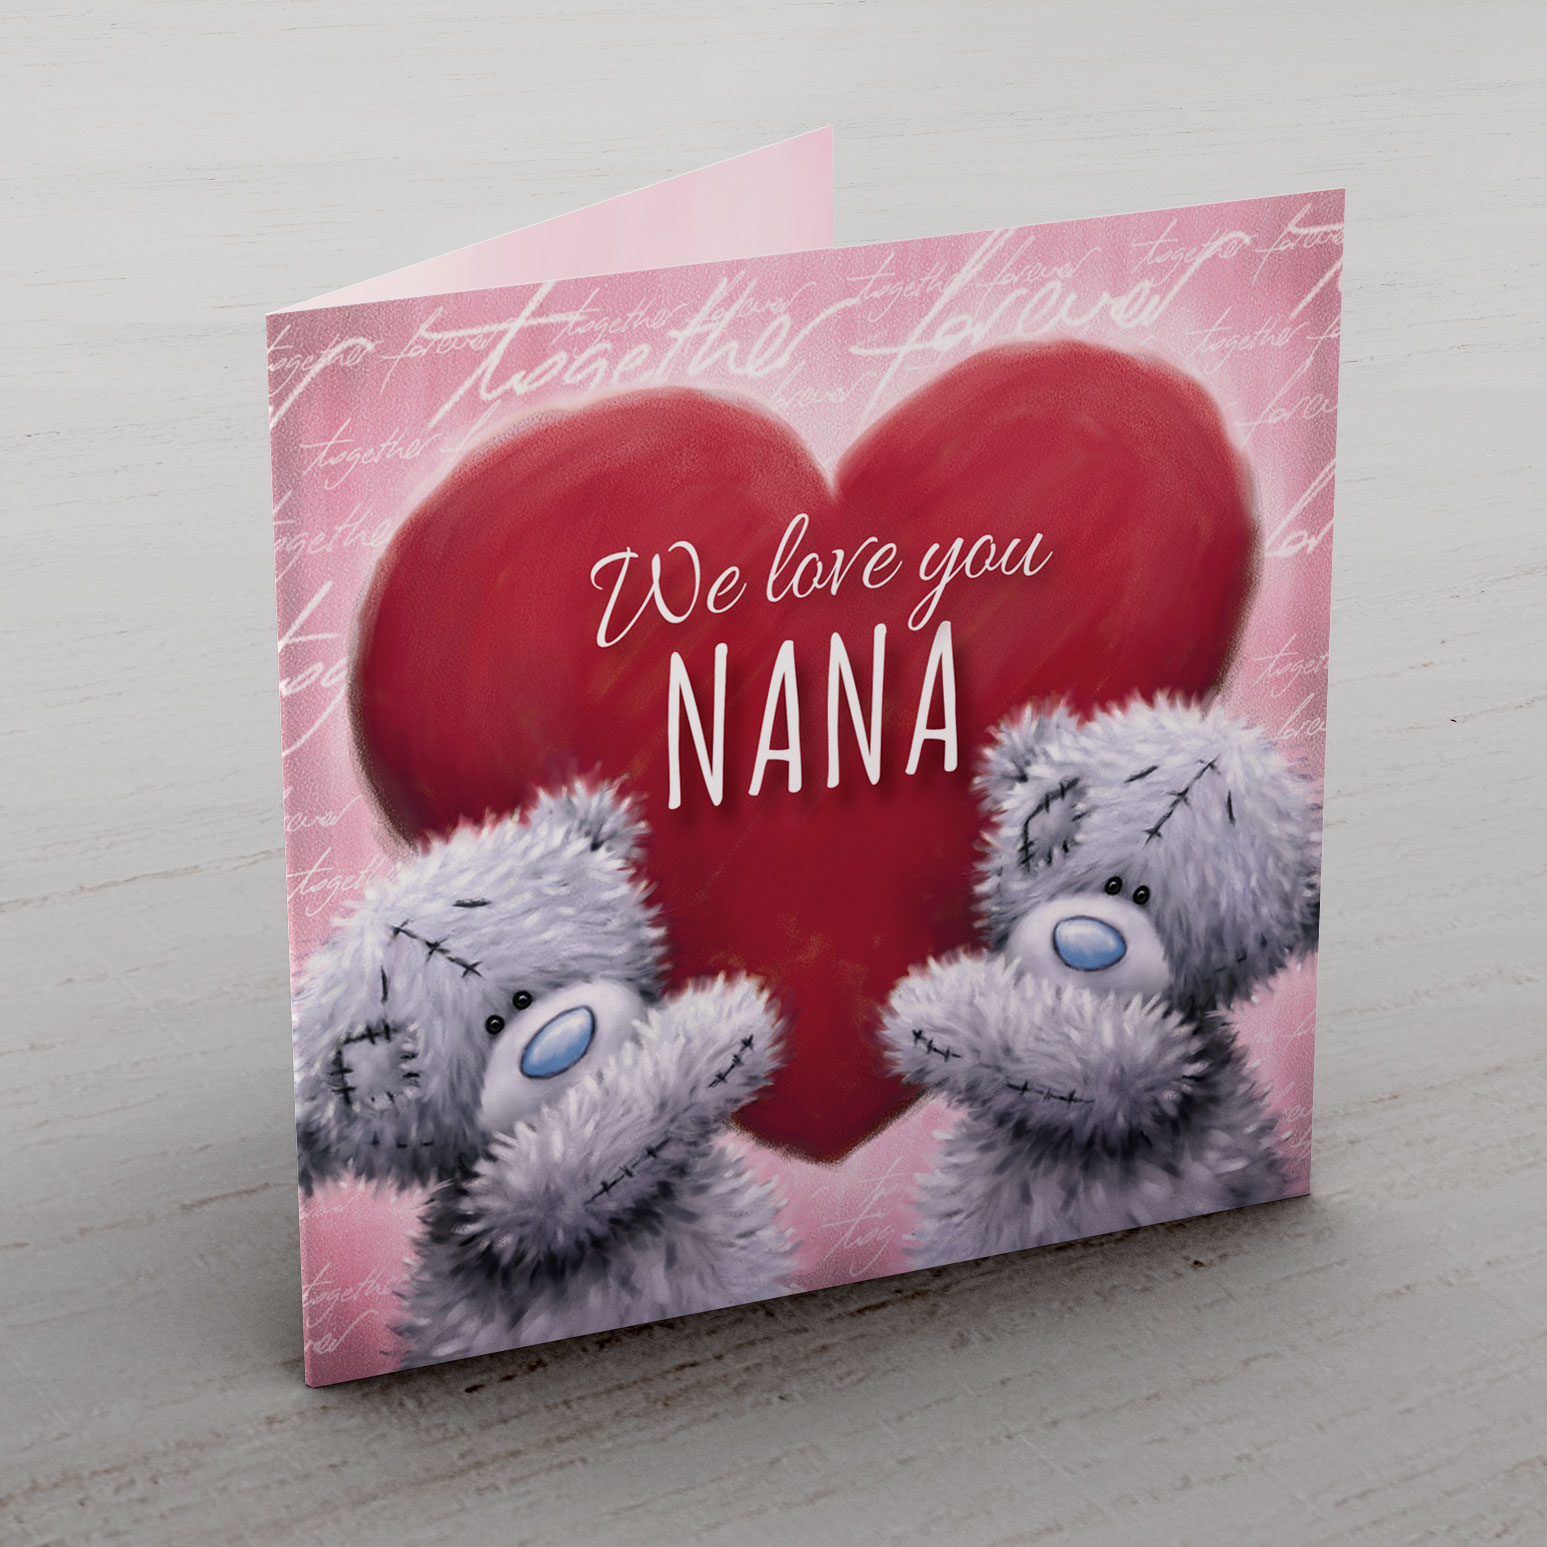 Me to You Card - We Love You Nana